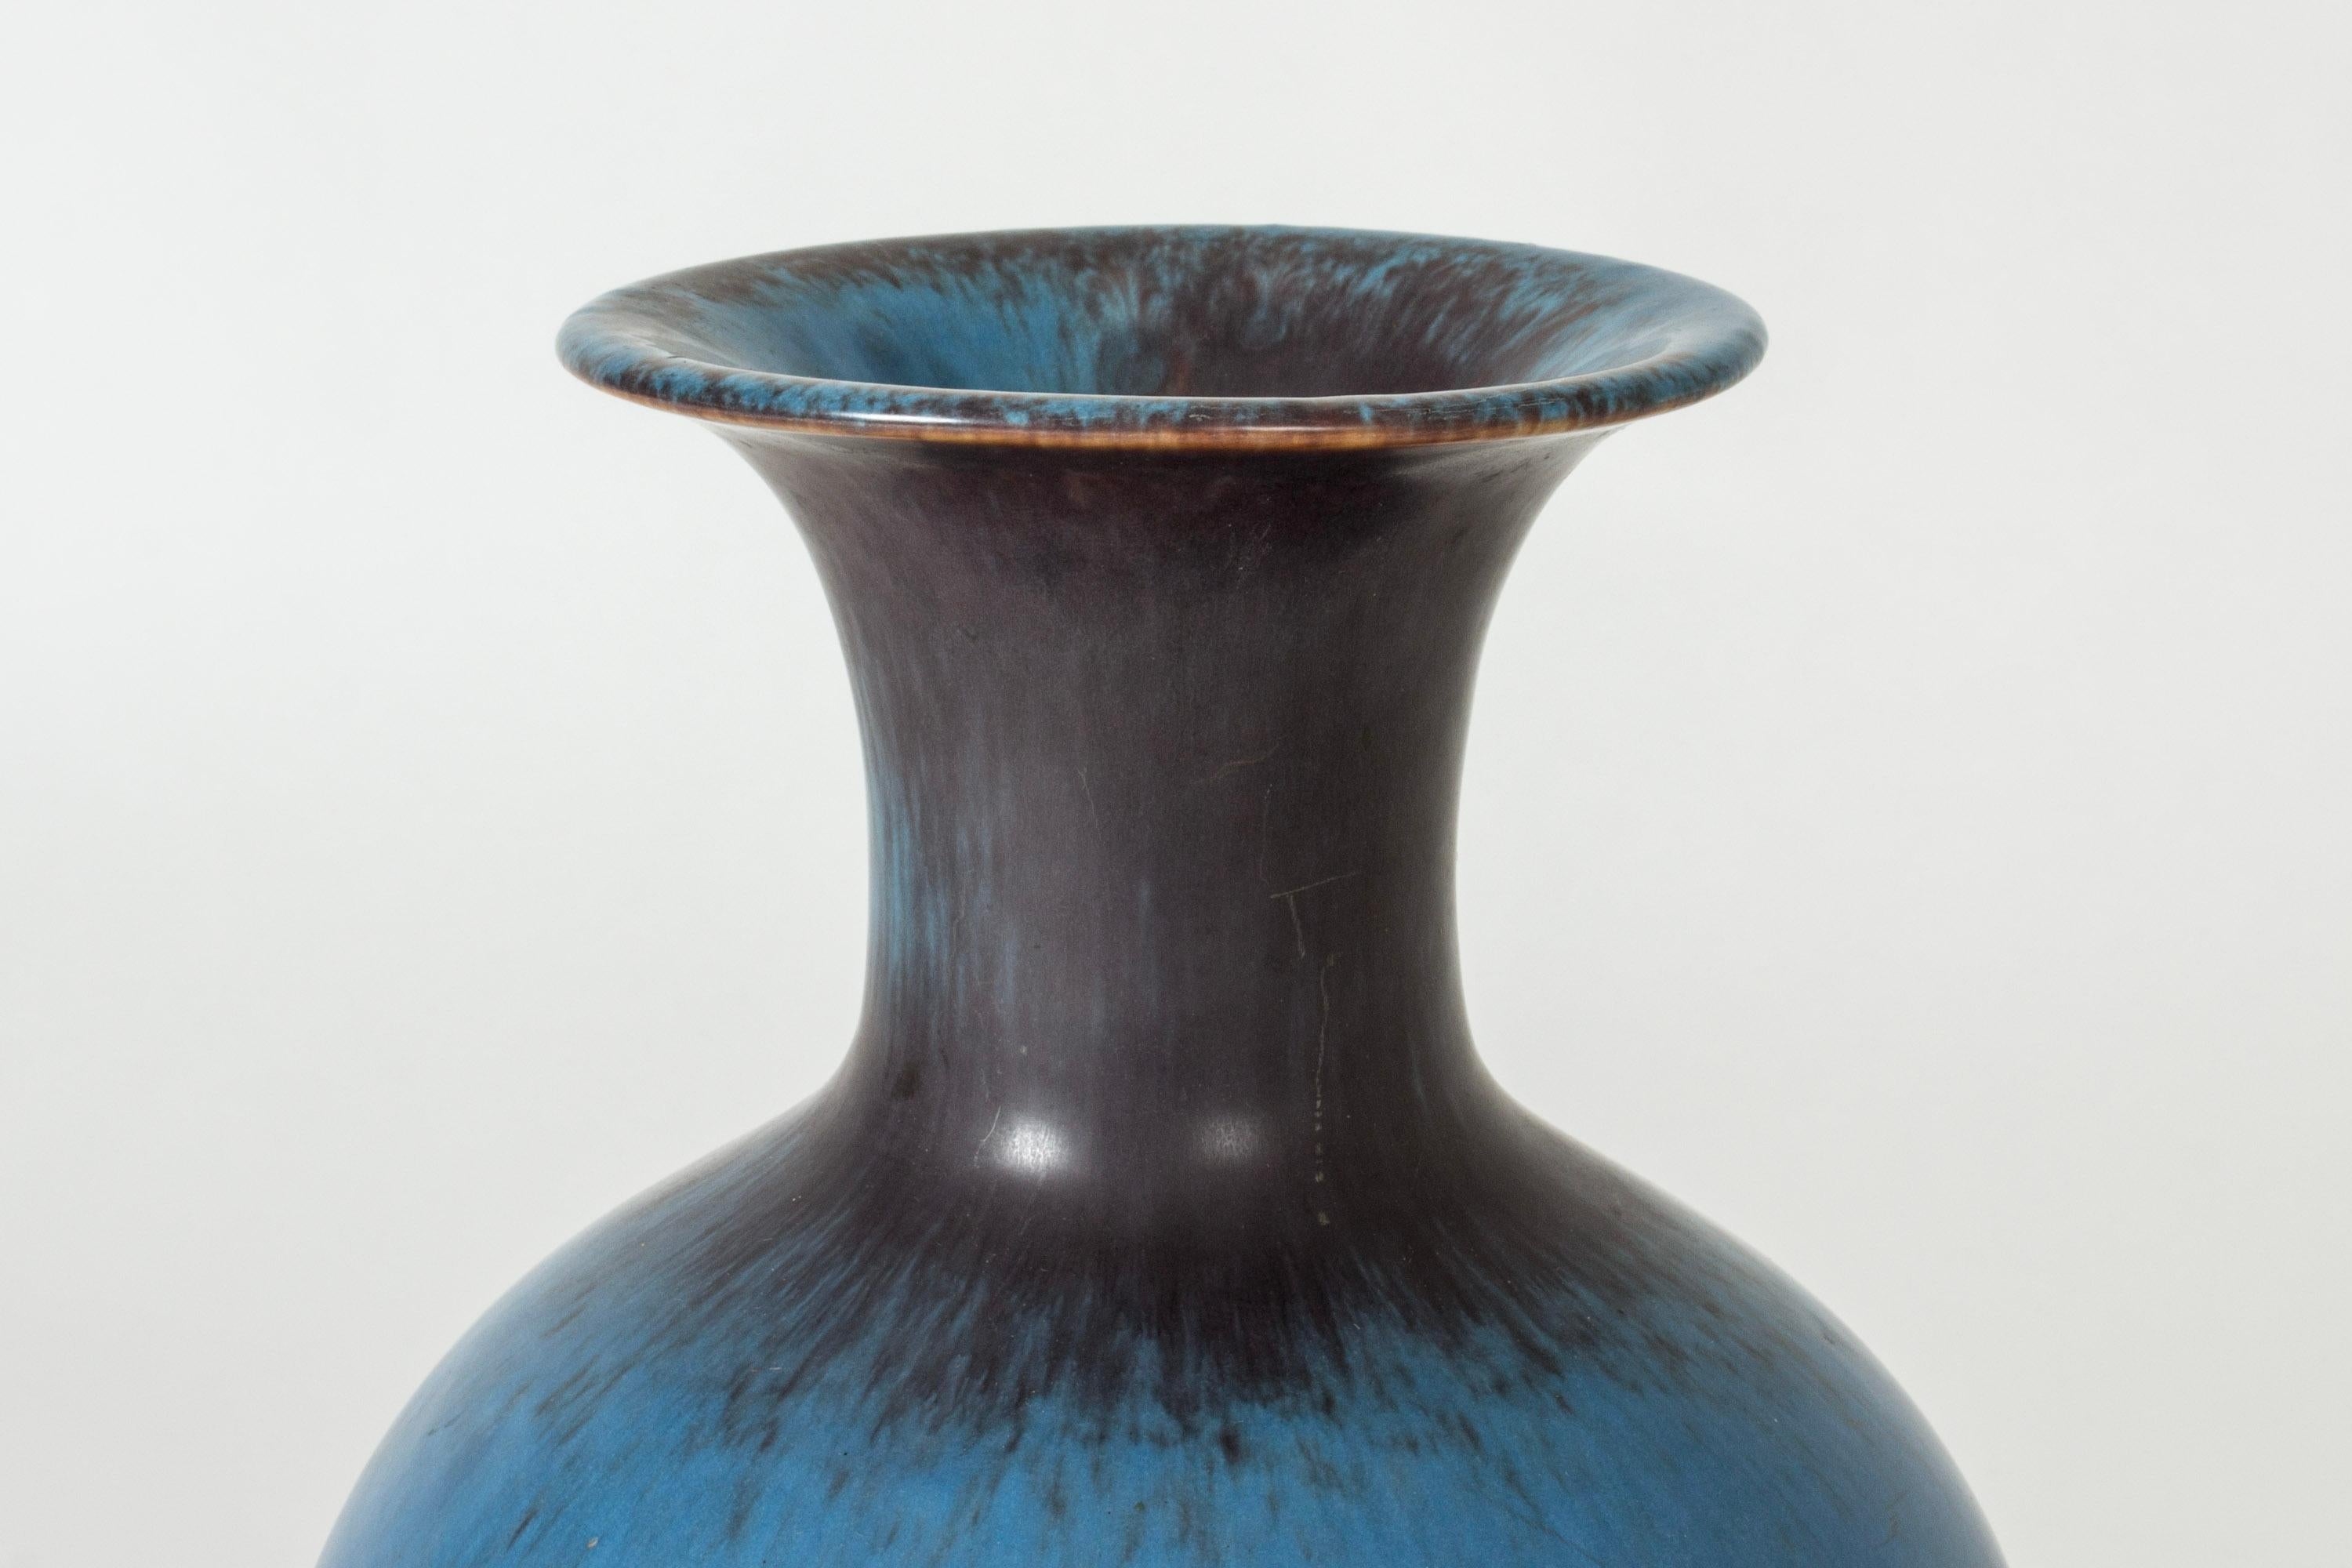 Grand vase en grès de Gunnar Nylund de forme classique. Magnifique glaçure qui alterne entre le violet et le bleu clair dans des éclaboussures spectaculaires.